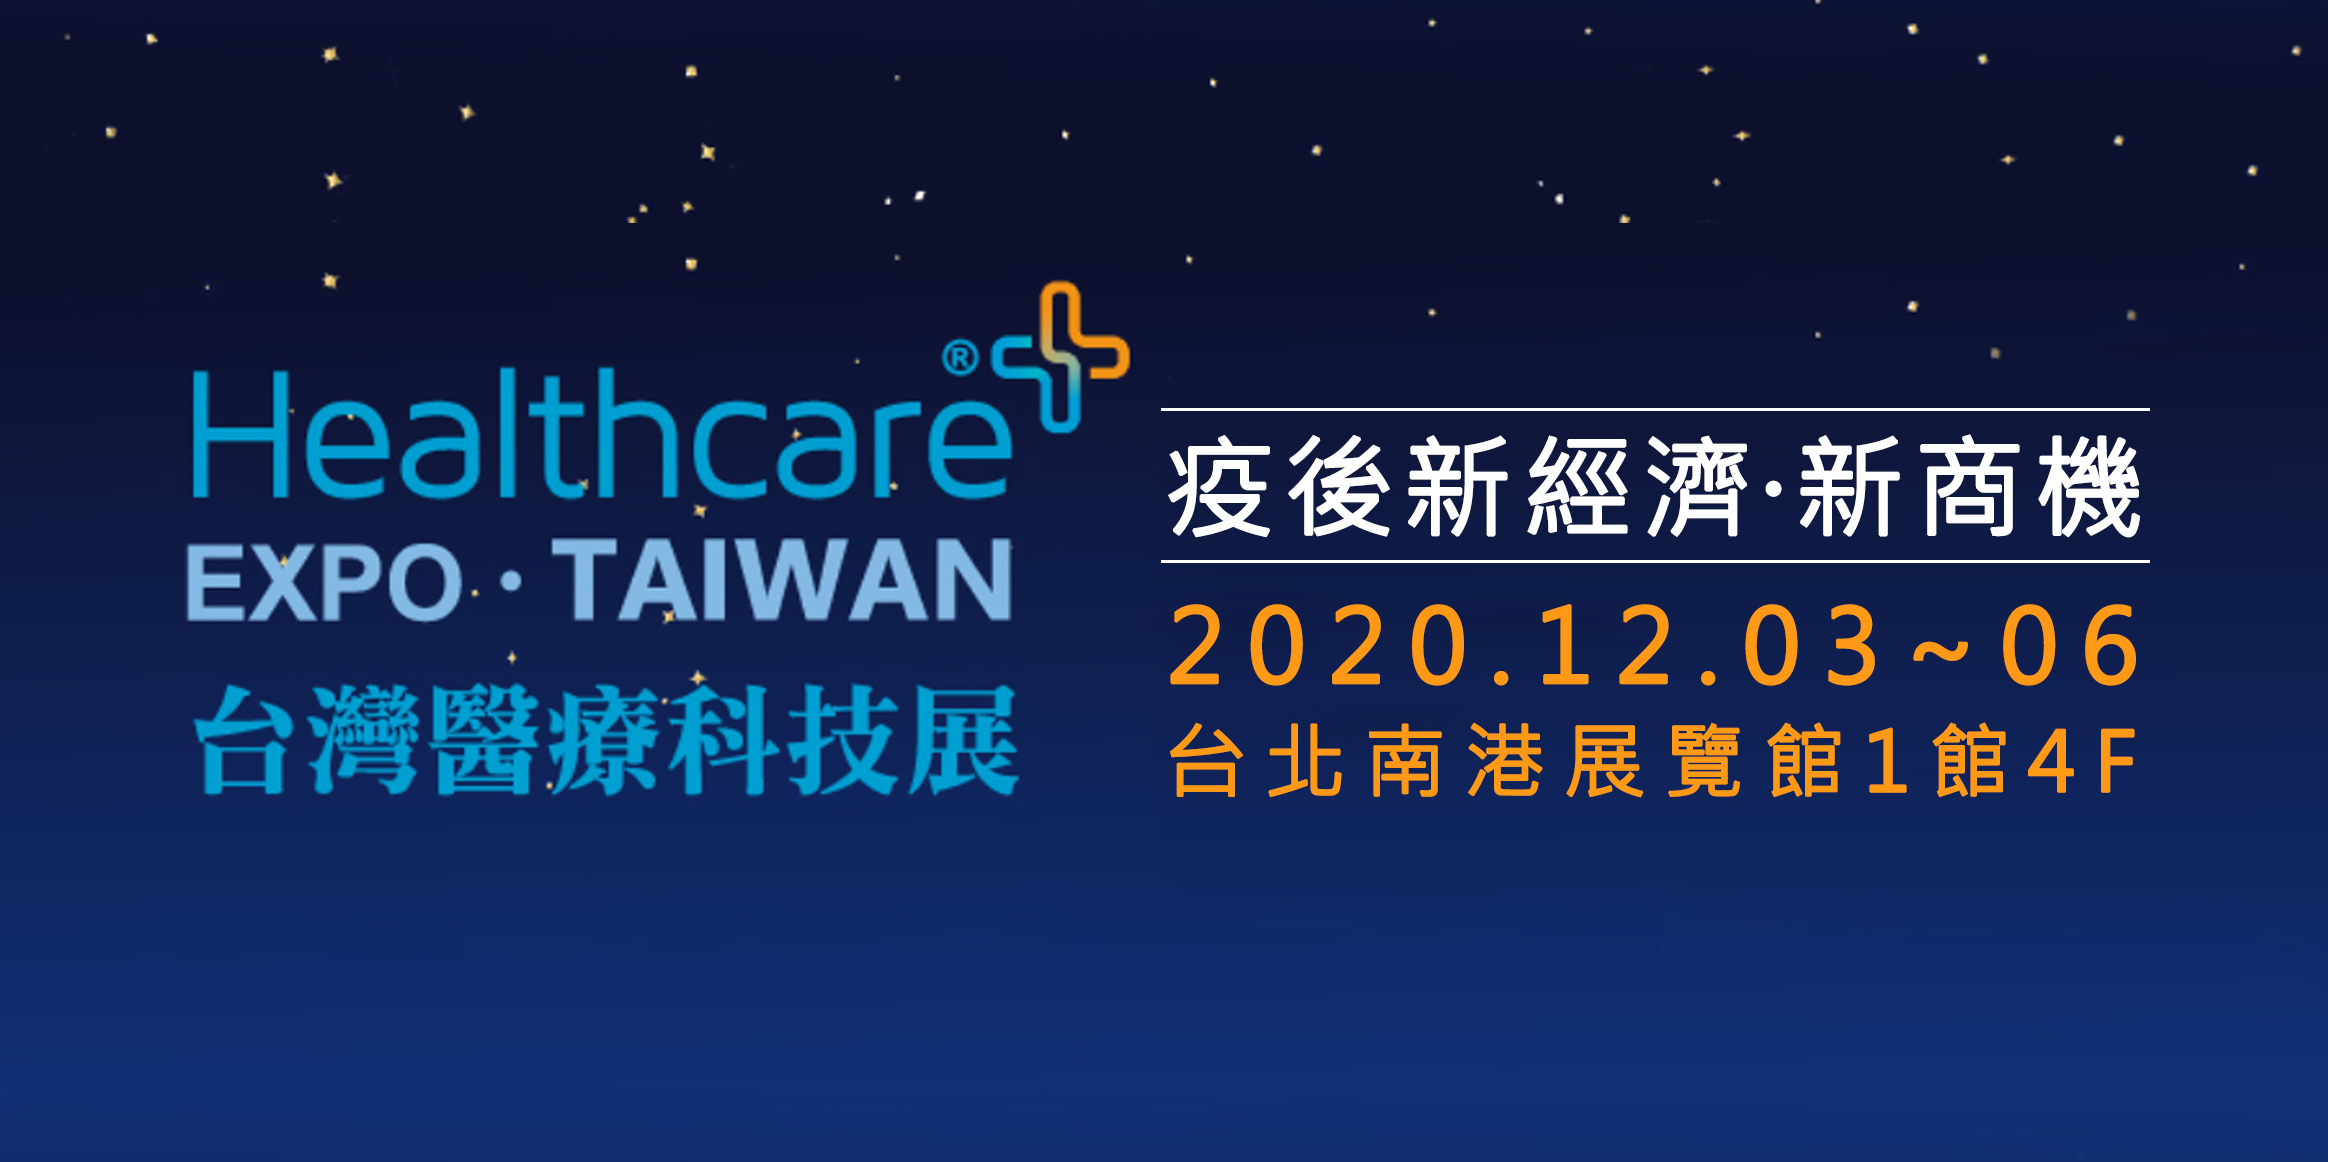 台灣醫療科技展-超極生技於2020年12月03日至06日與映通一起參加台灣醫療科技展，推廣全球首創、免校正酸鹼檢測系統。
            